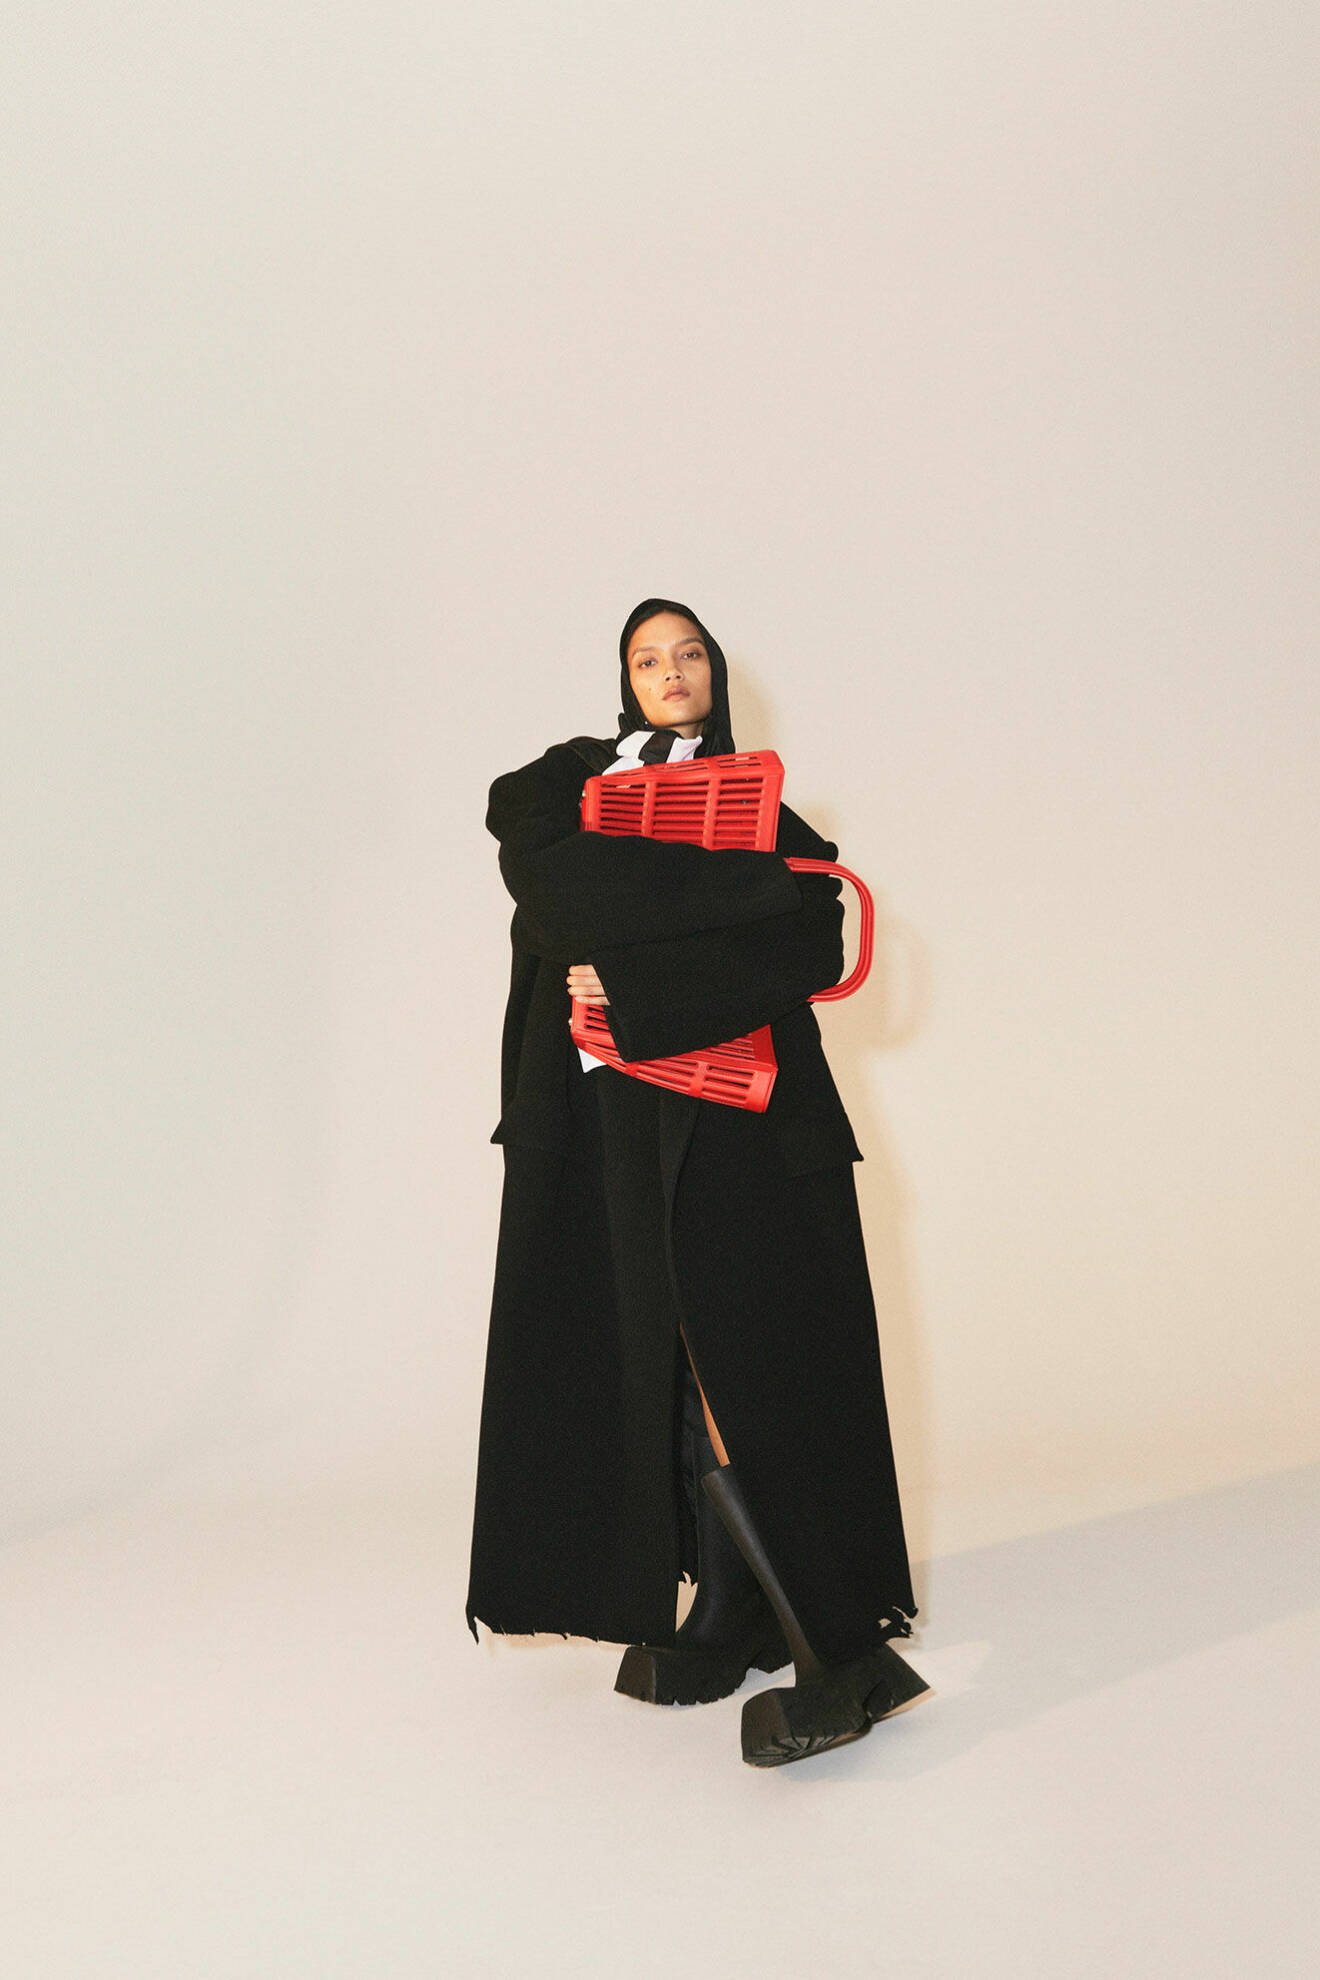 Modellen bär en svart kappa, scarf och röd väska, allt från Balenciaga